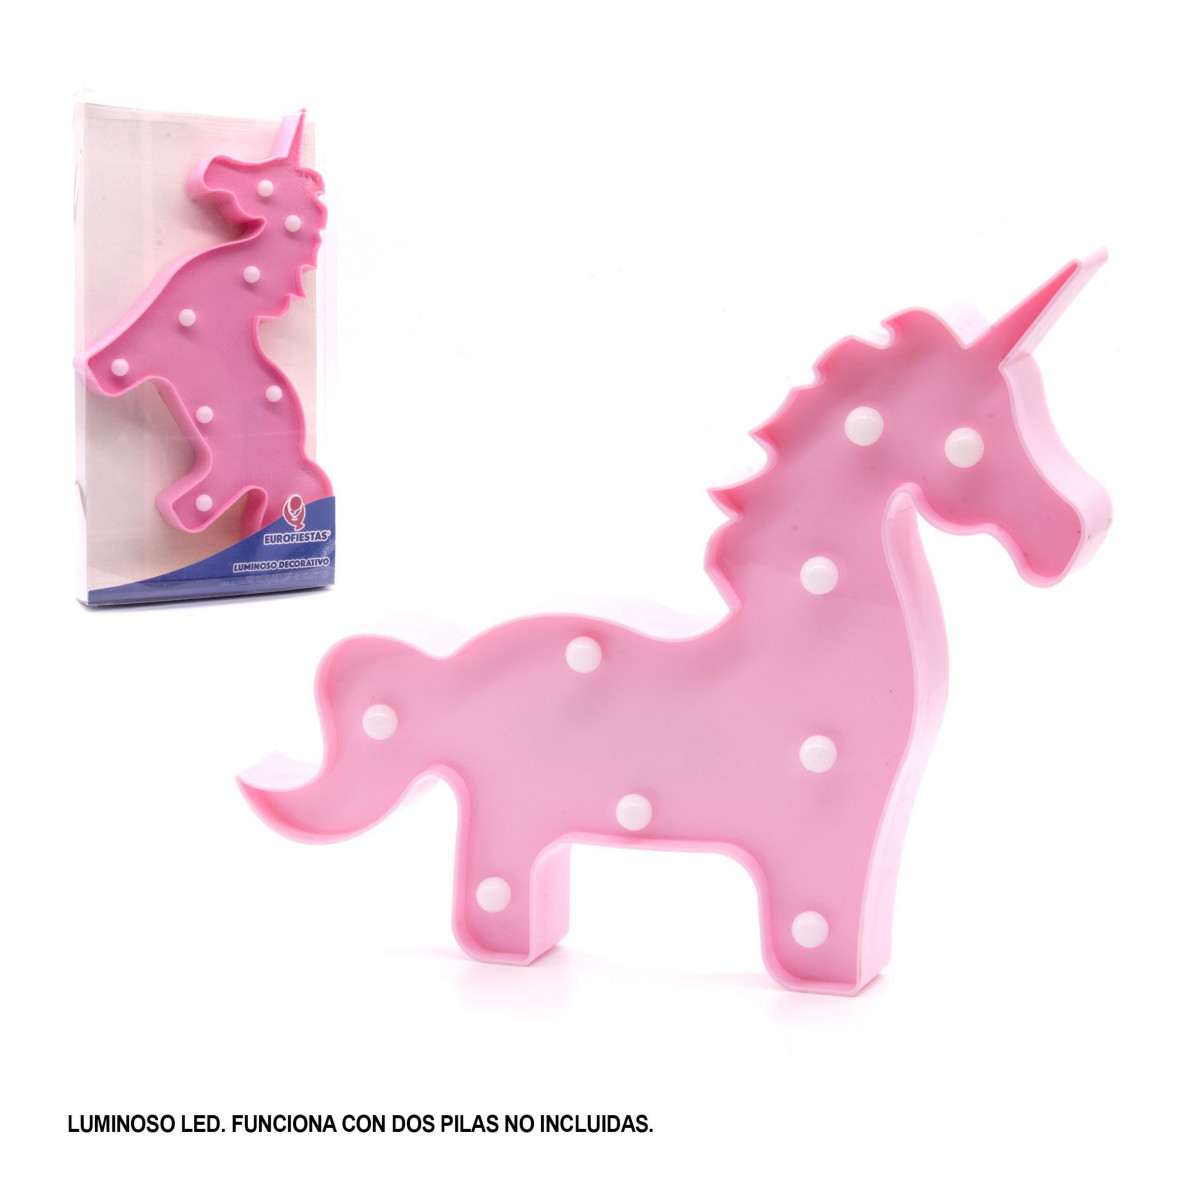 Figura led unicorno rosa